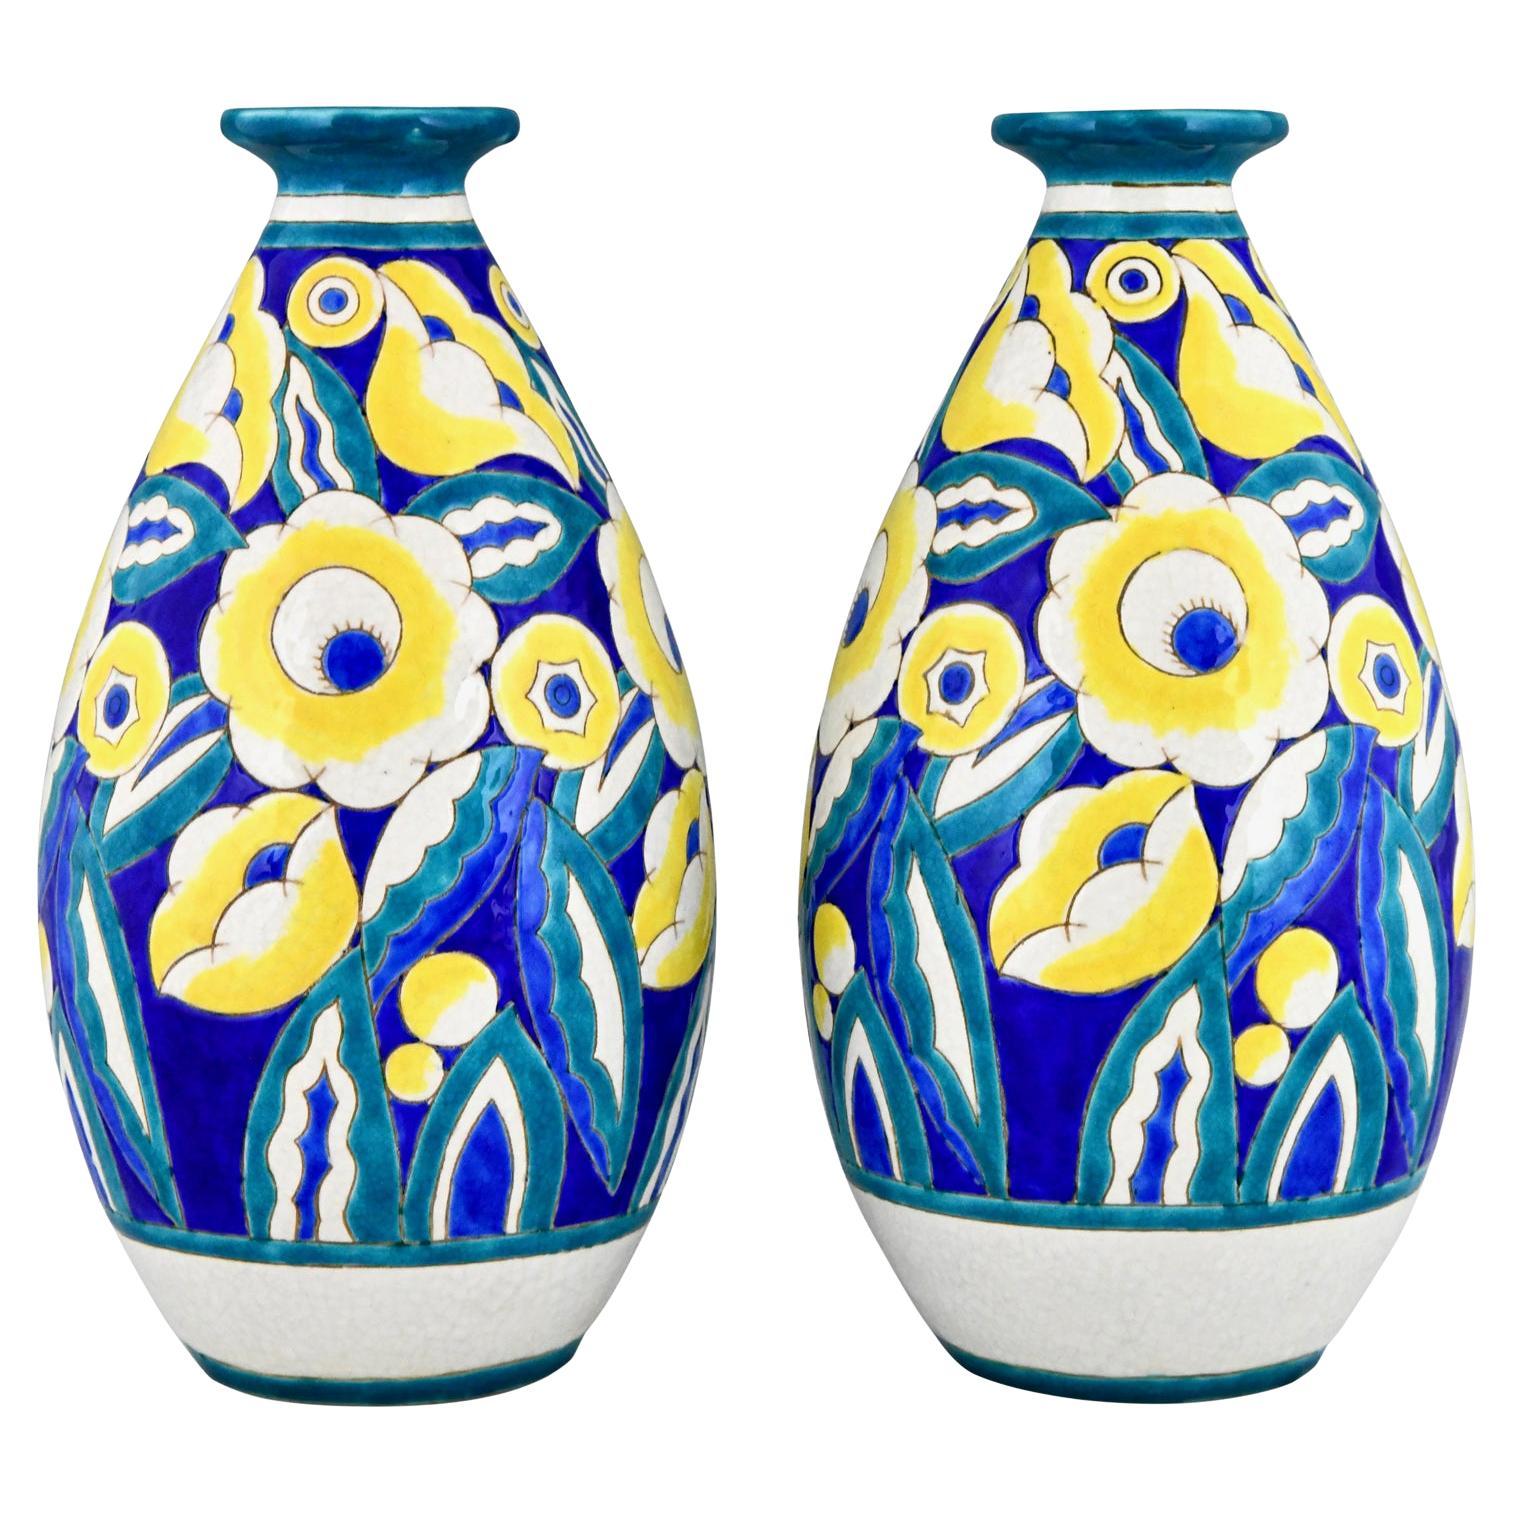 Pair of Art Deco Ceramic Vases with Flowers by Keramis, Belgium 1932 For Sale